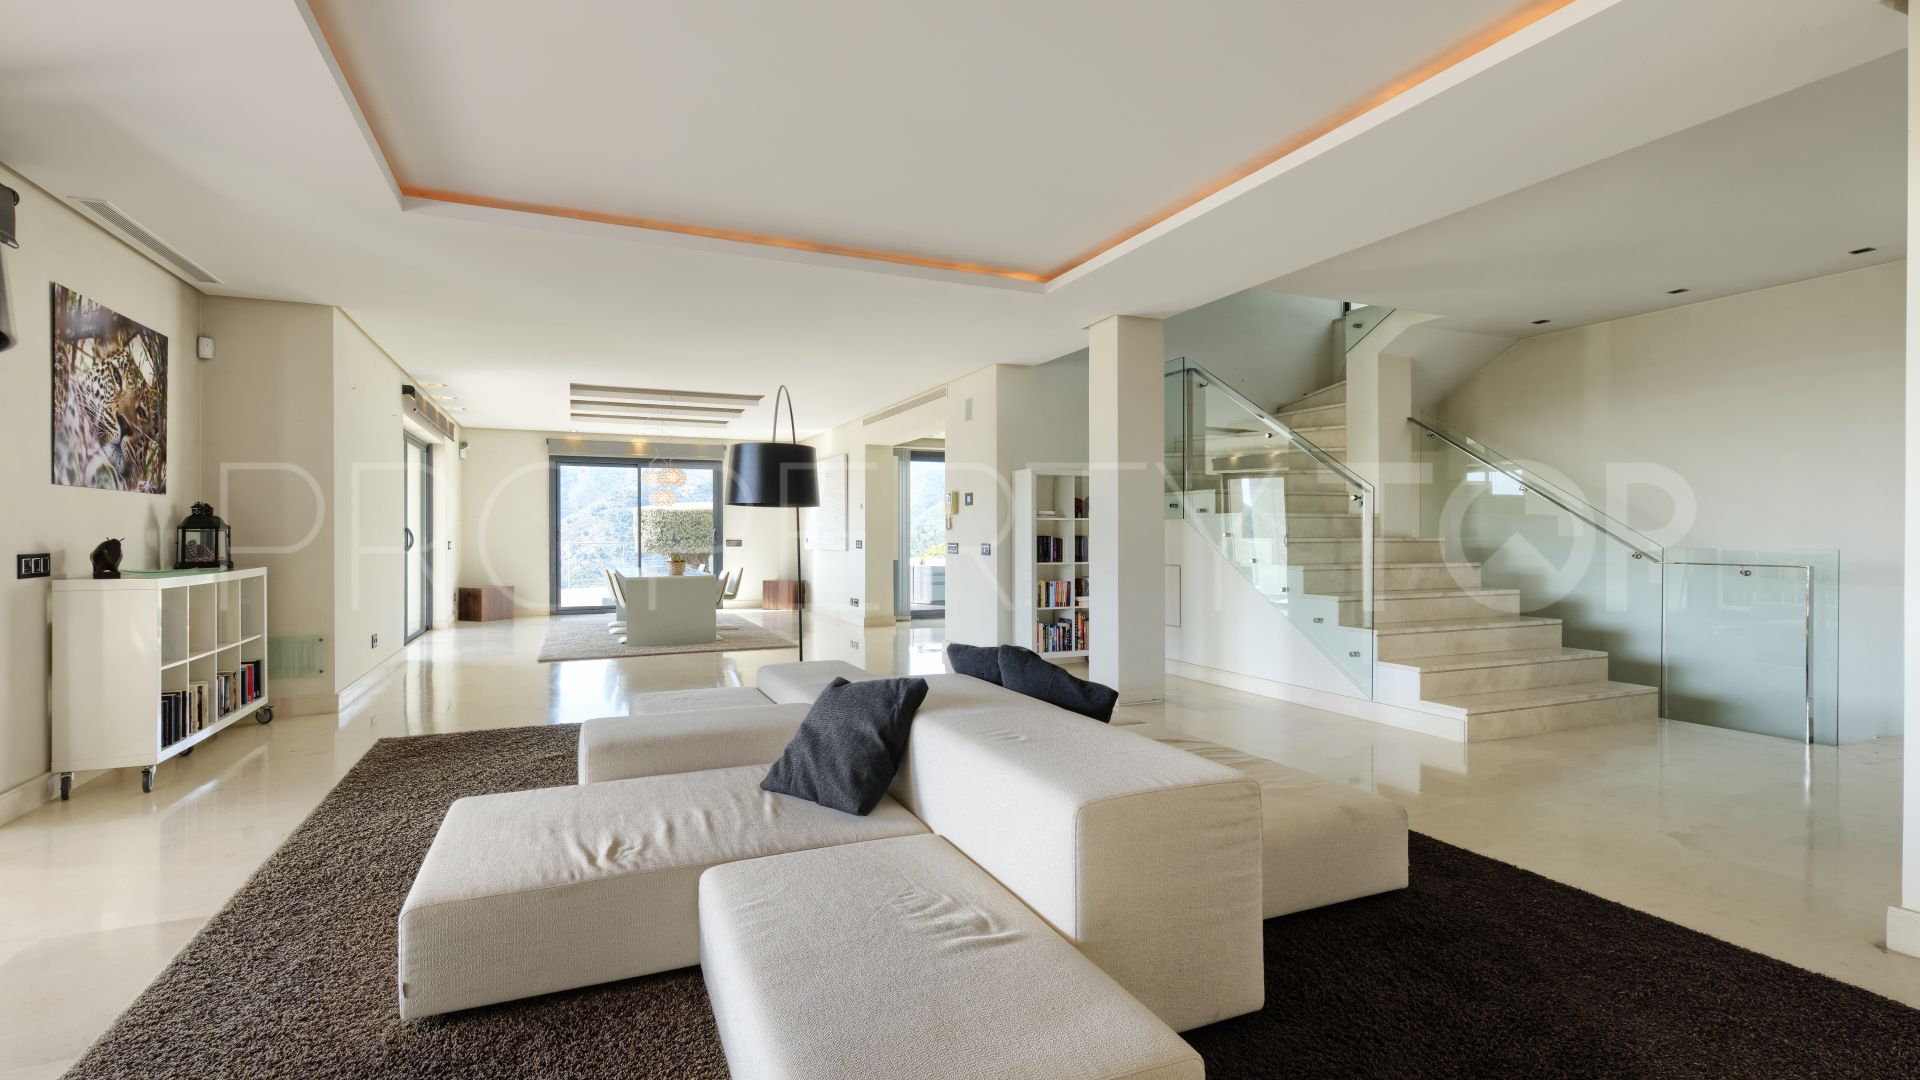 Villa en venta en Carretera de Istan con 5 dormitorios